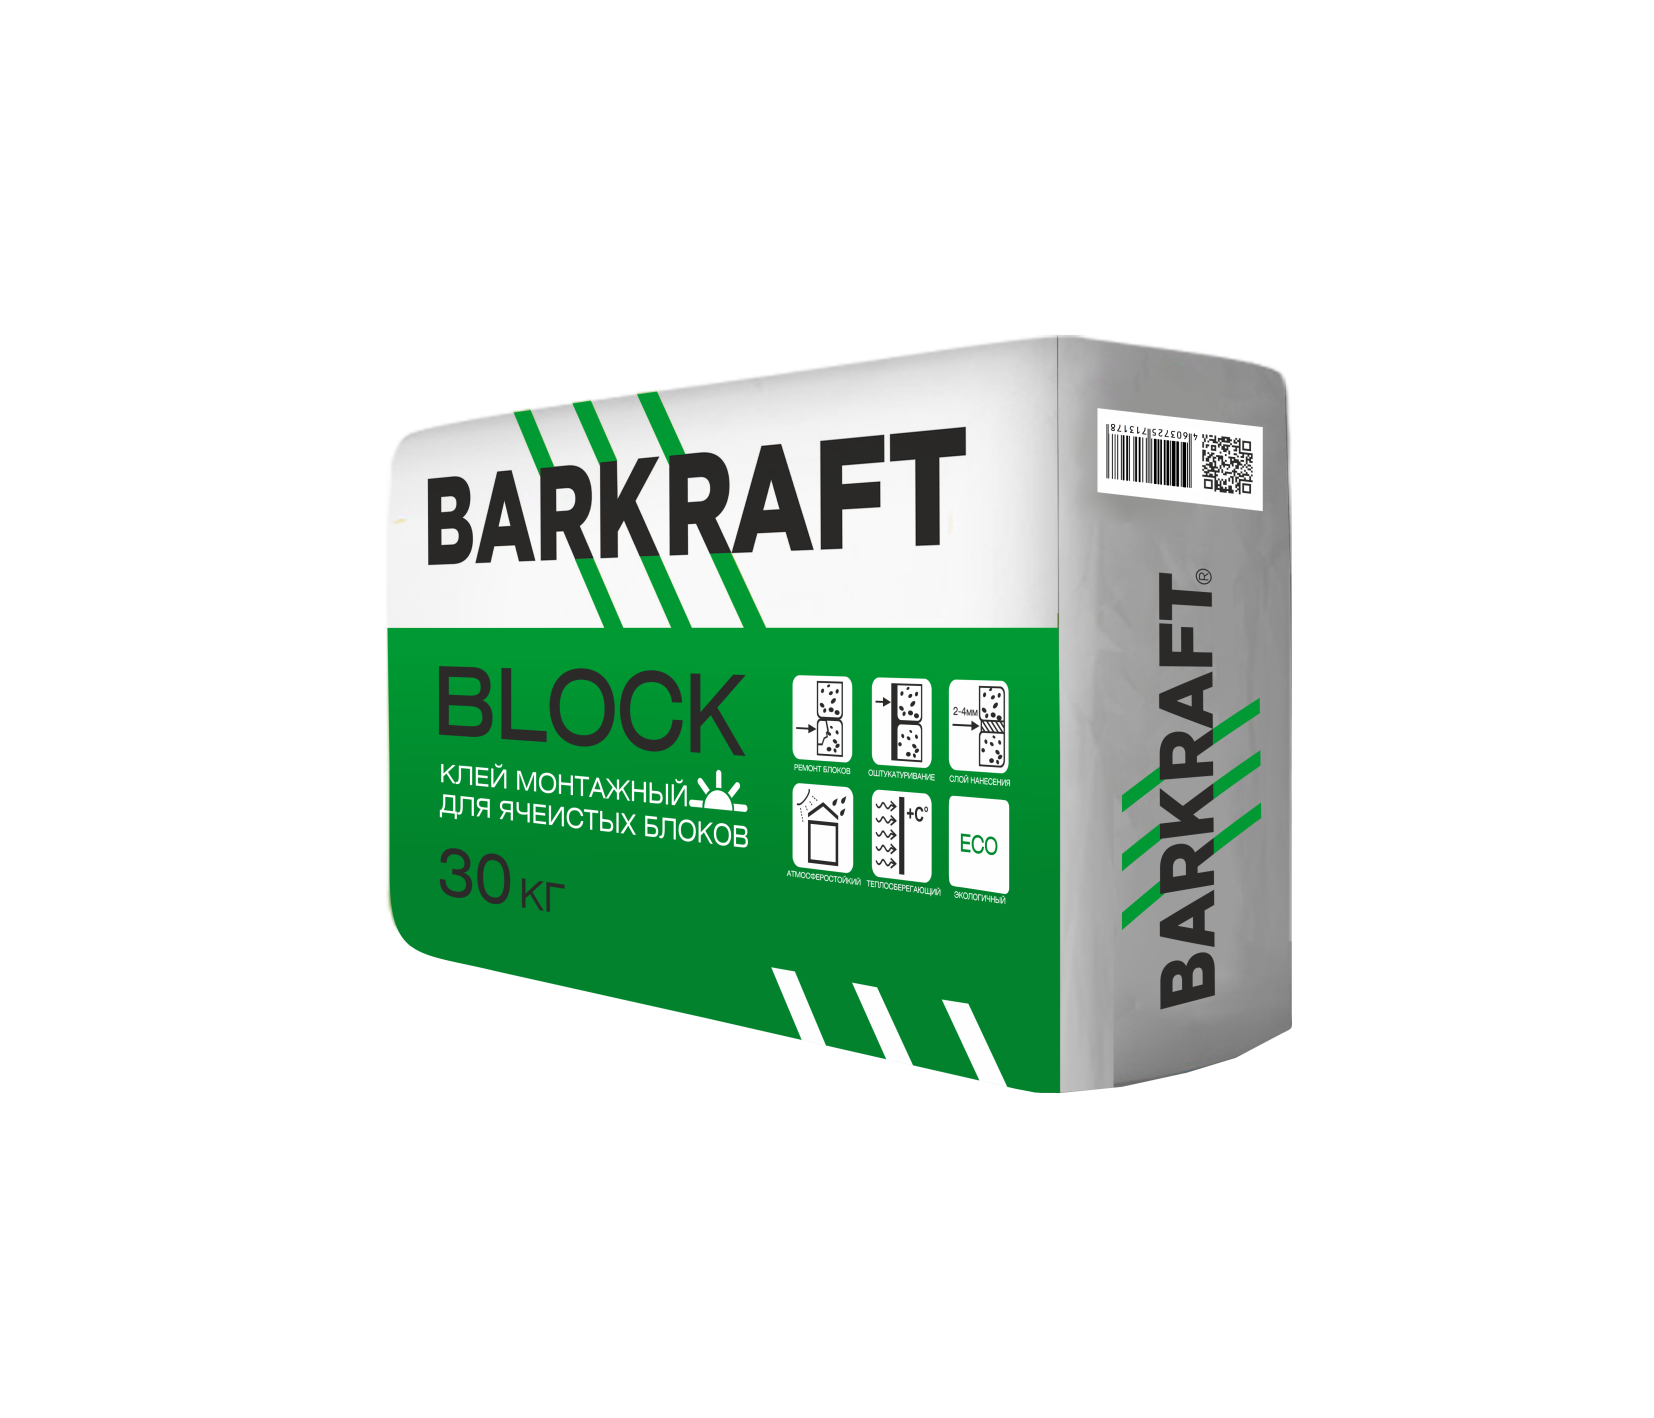 КЛЕЙ монтажный для ячеистых блоков BARKRAFT BLOCK, 30 кг